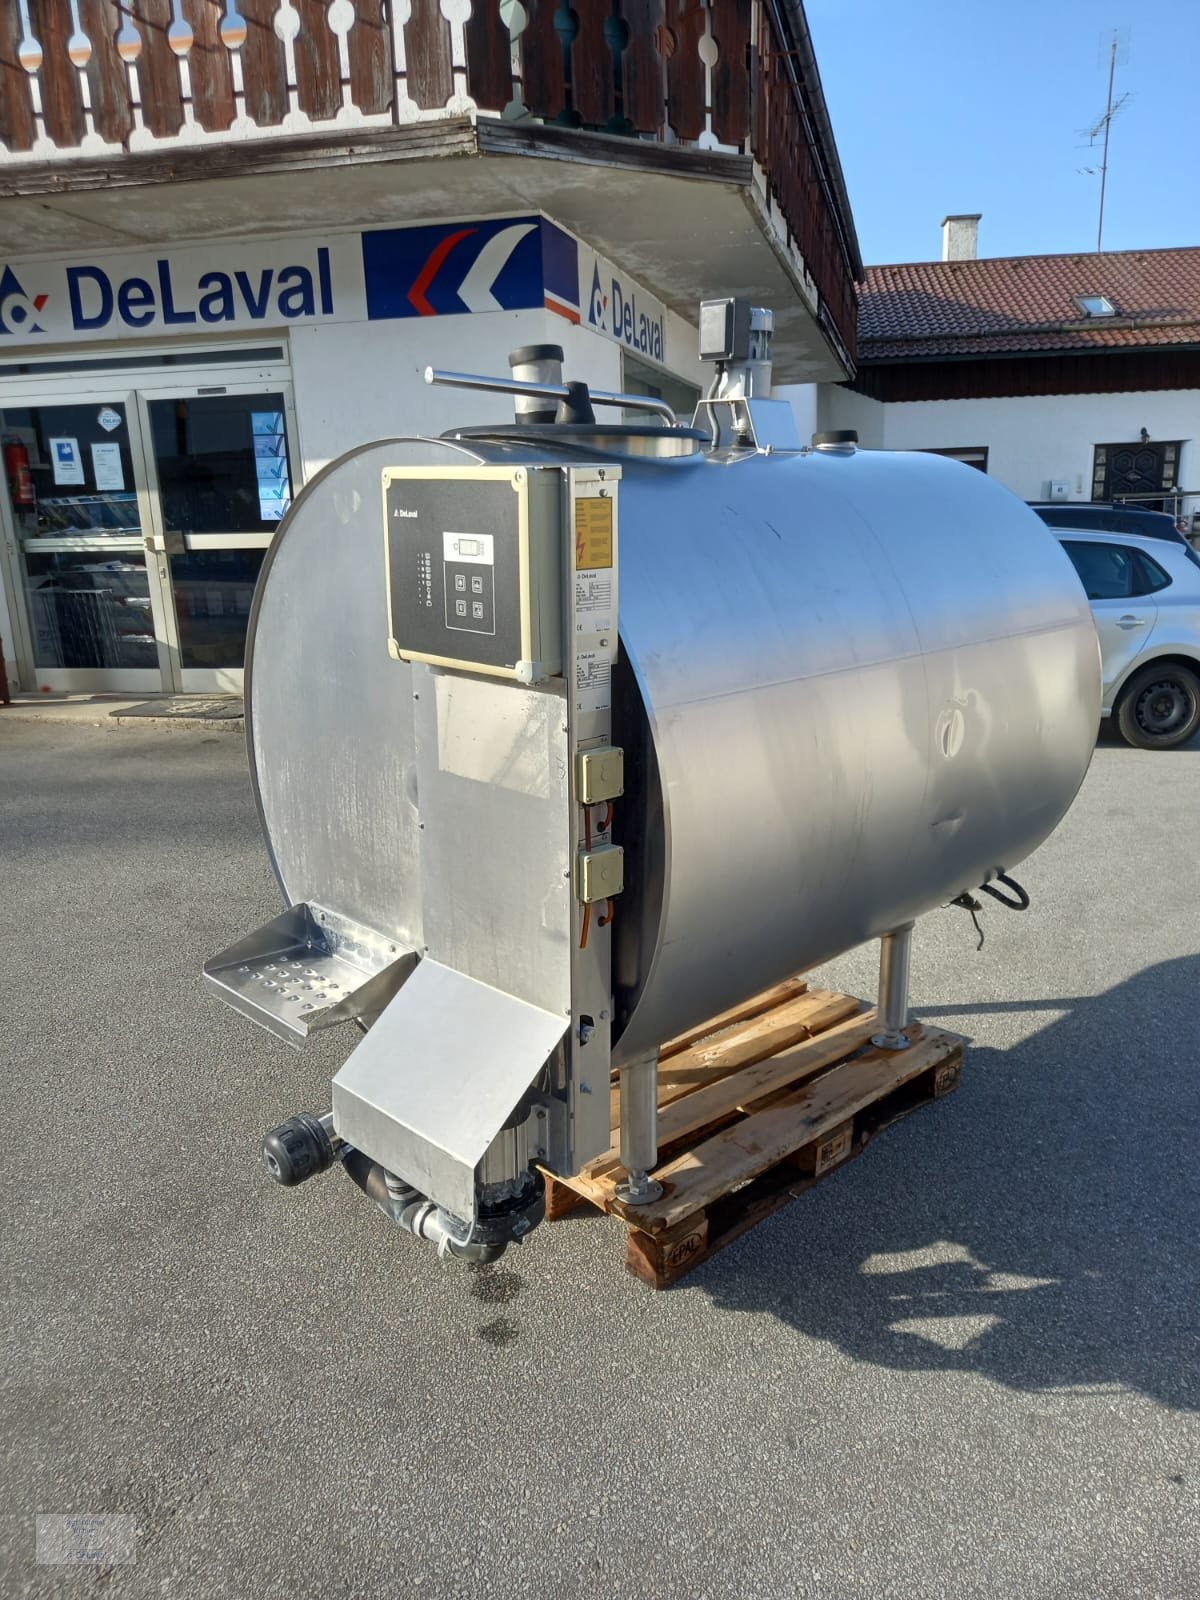 Milchkühltank des Typs DeLaval DXCR, Gebrauchtmaschine in Hutthurm (Bild 2)